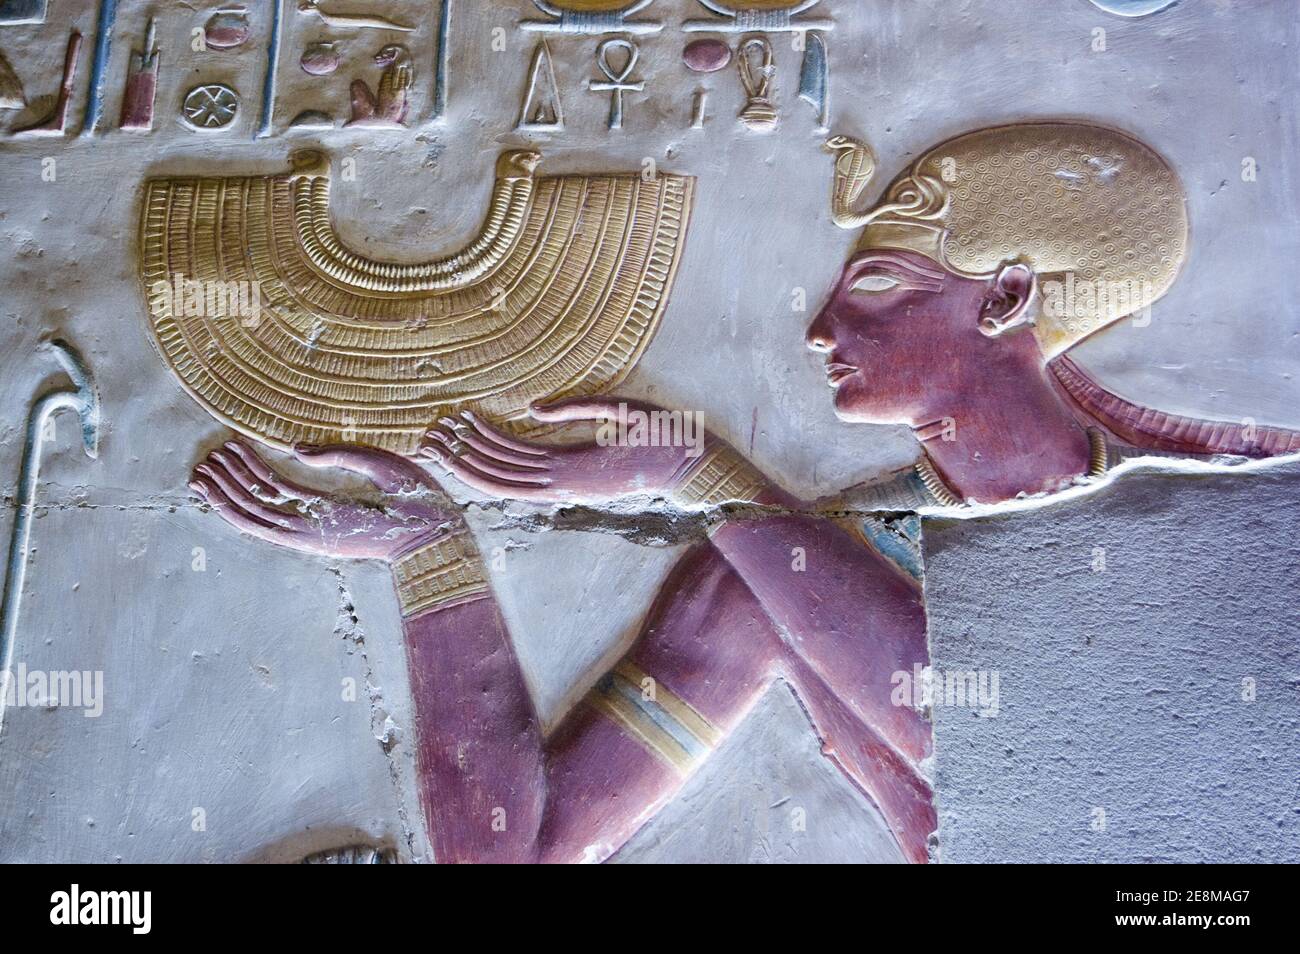 Antica scultura in bassorilievo egiziano che mostra il faraone Seti i tenendo una collana in stile colletto d'oro. Tempio di Abydos, El Balyana, Egitto. Scultura antica Foto Stock